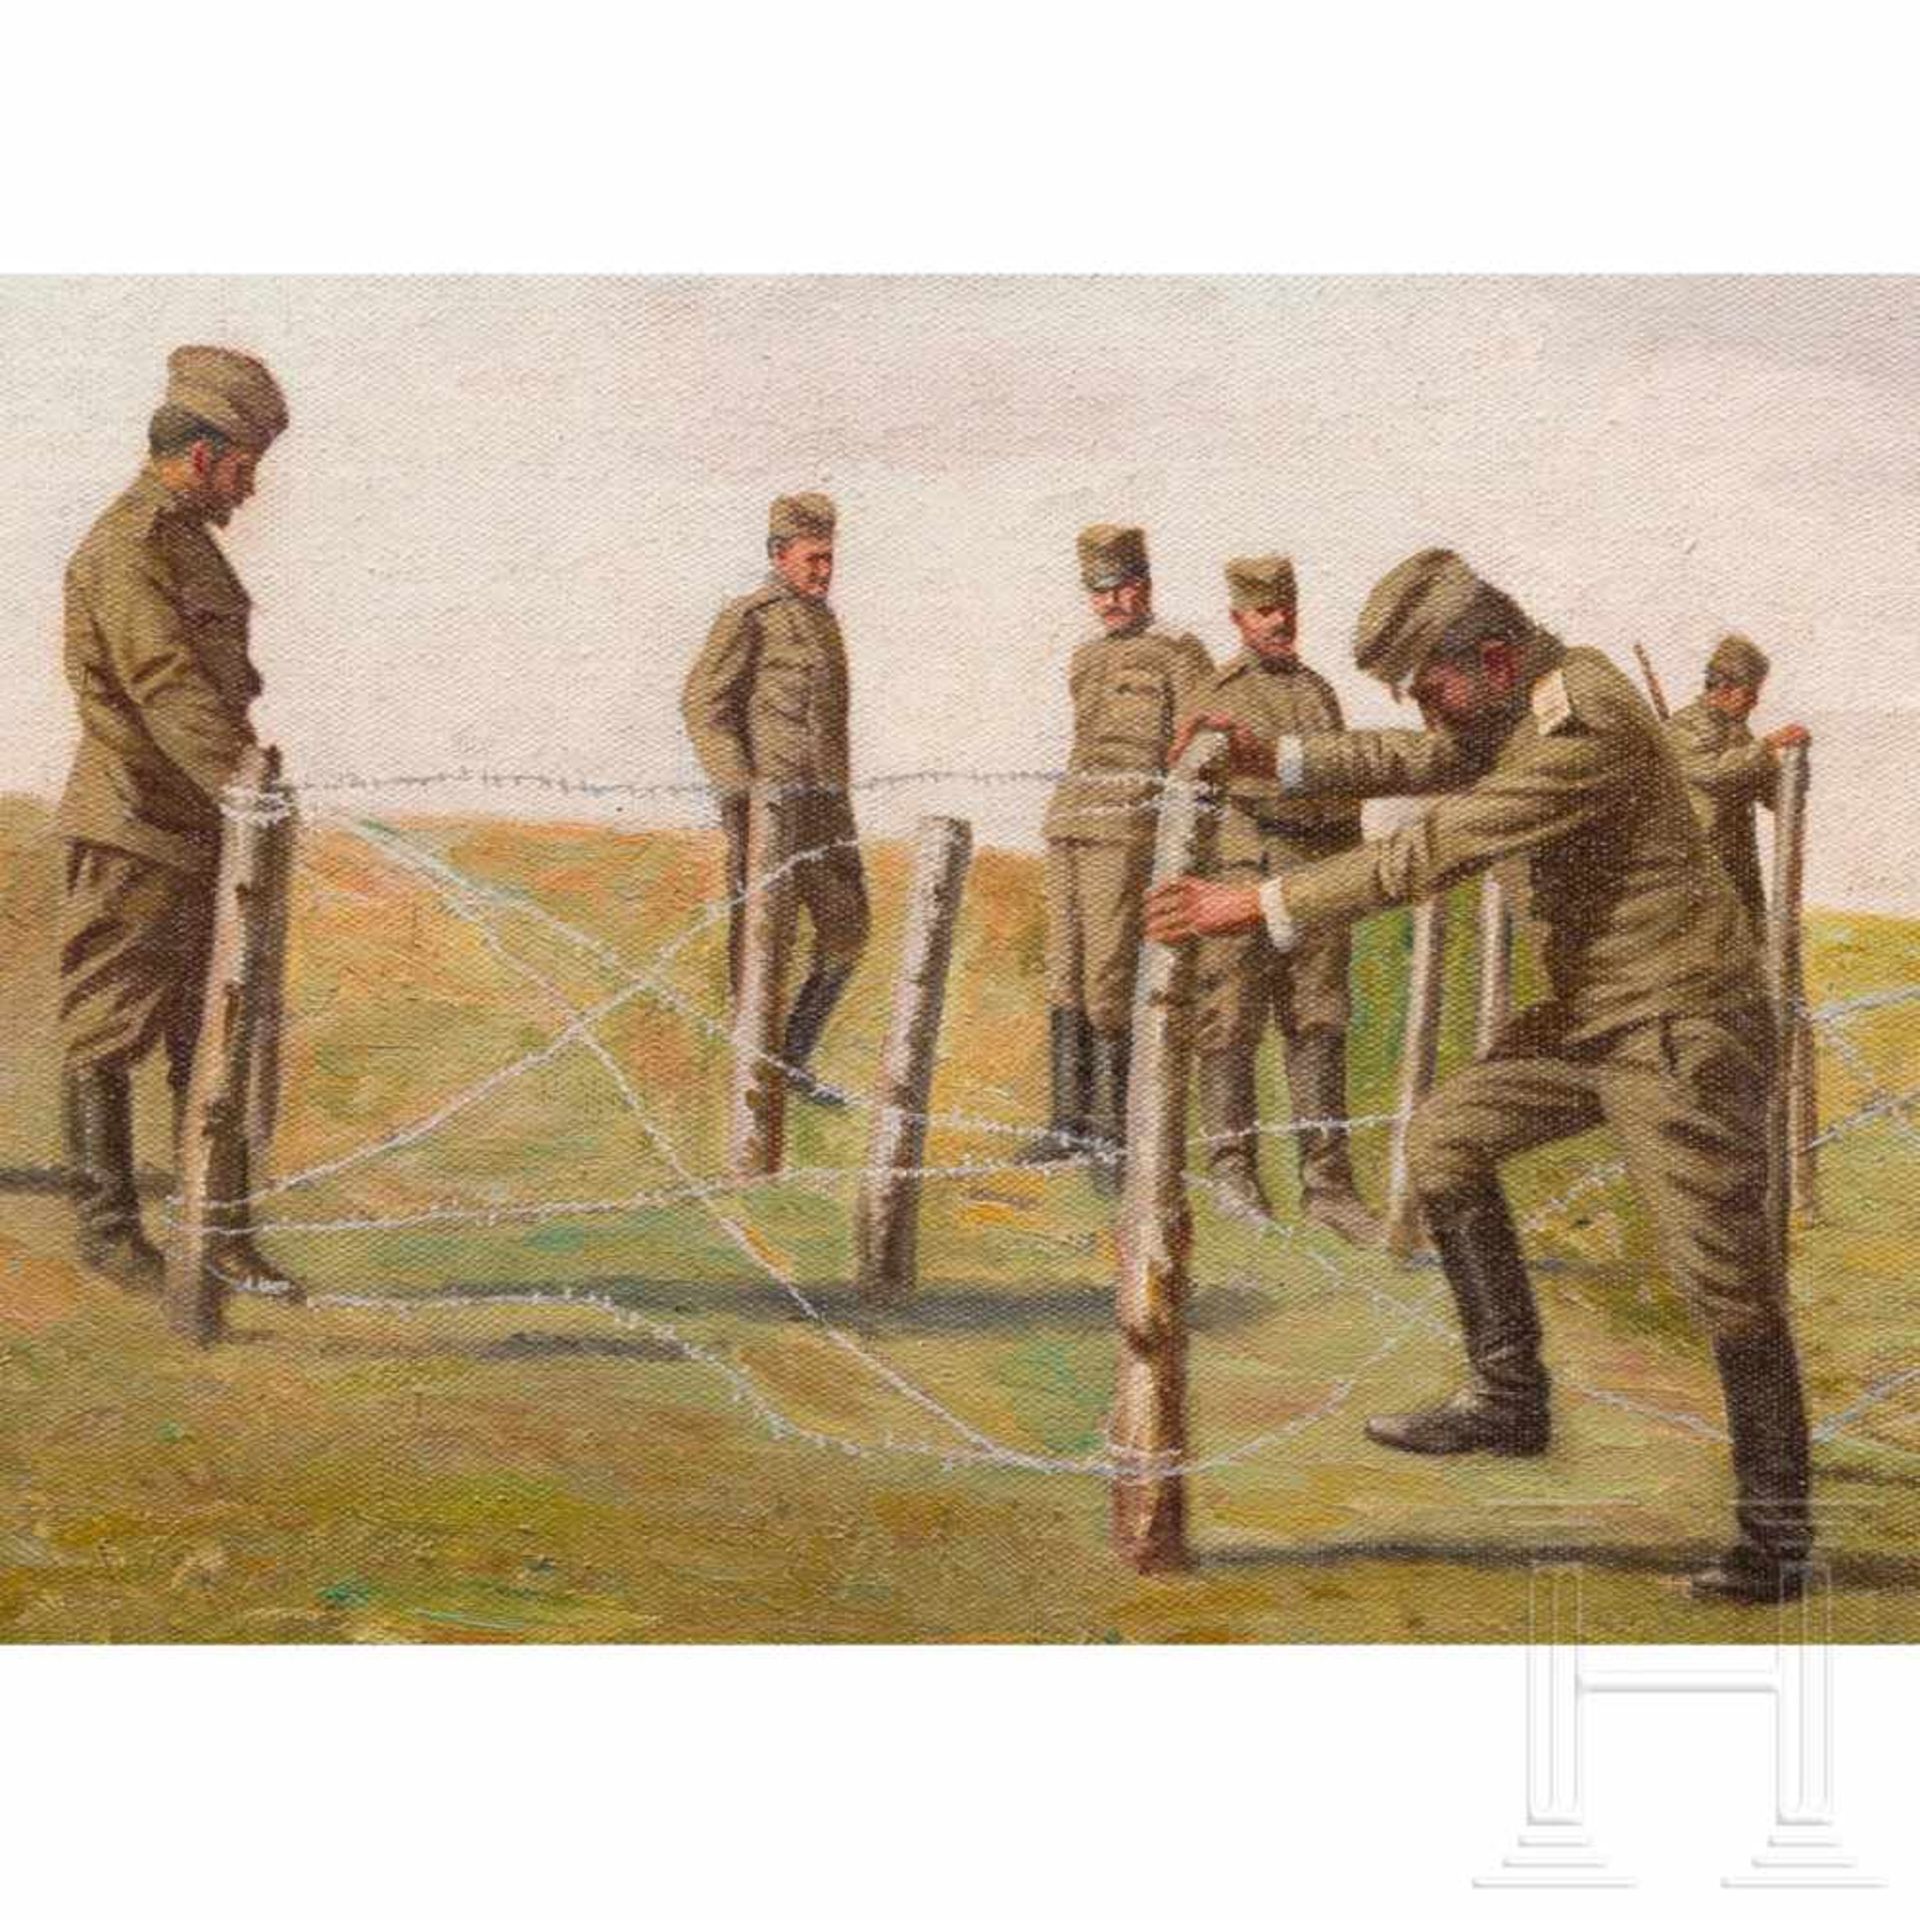 Two military oil paintings, 20th centuryÖl auf Leinwand, unsigniert, zwei verwundete Infanteristen - Bild 4 aus 4